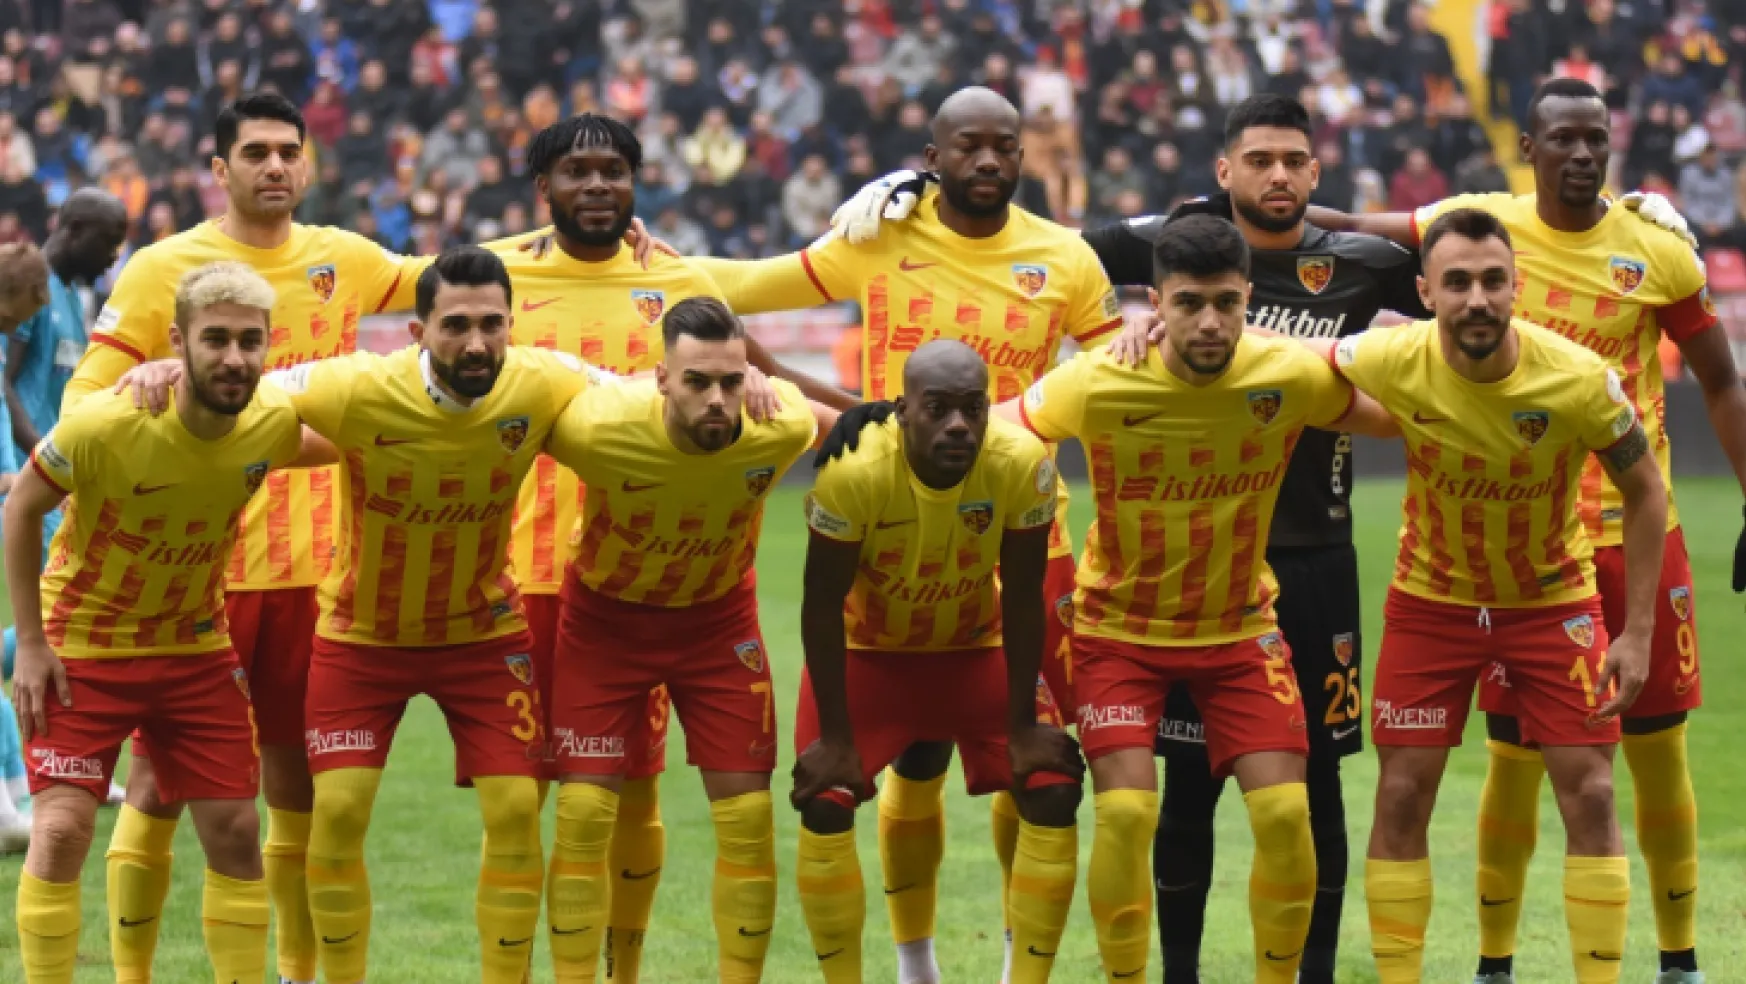 Kayserispor son 3 maçta kalesinde 9 gol gördü